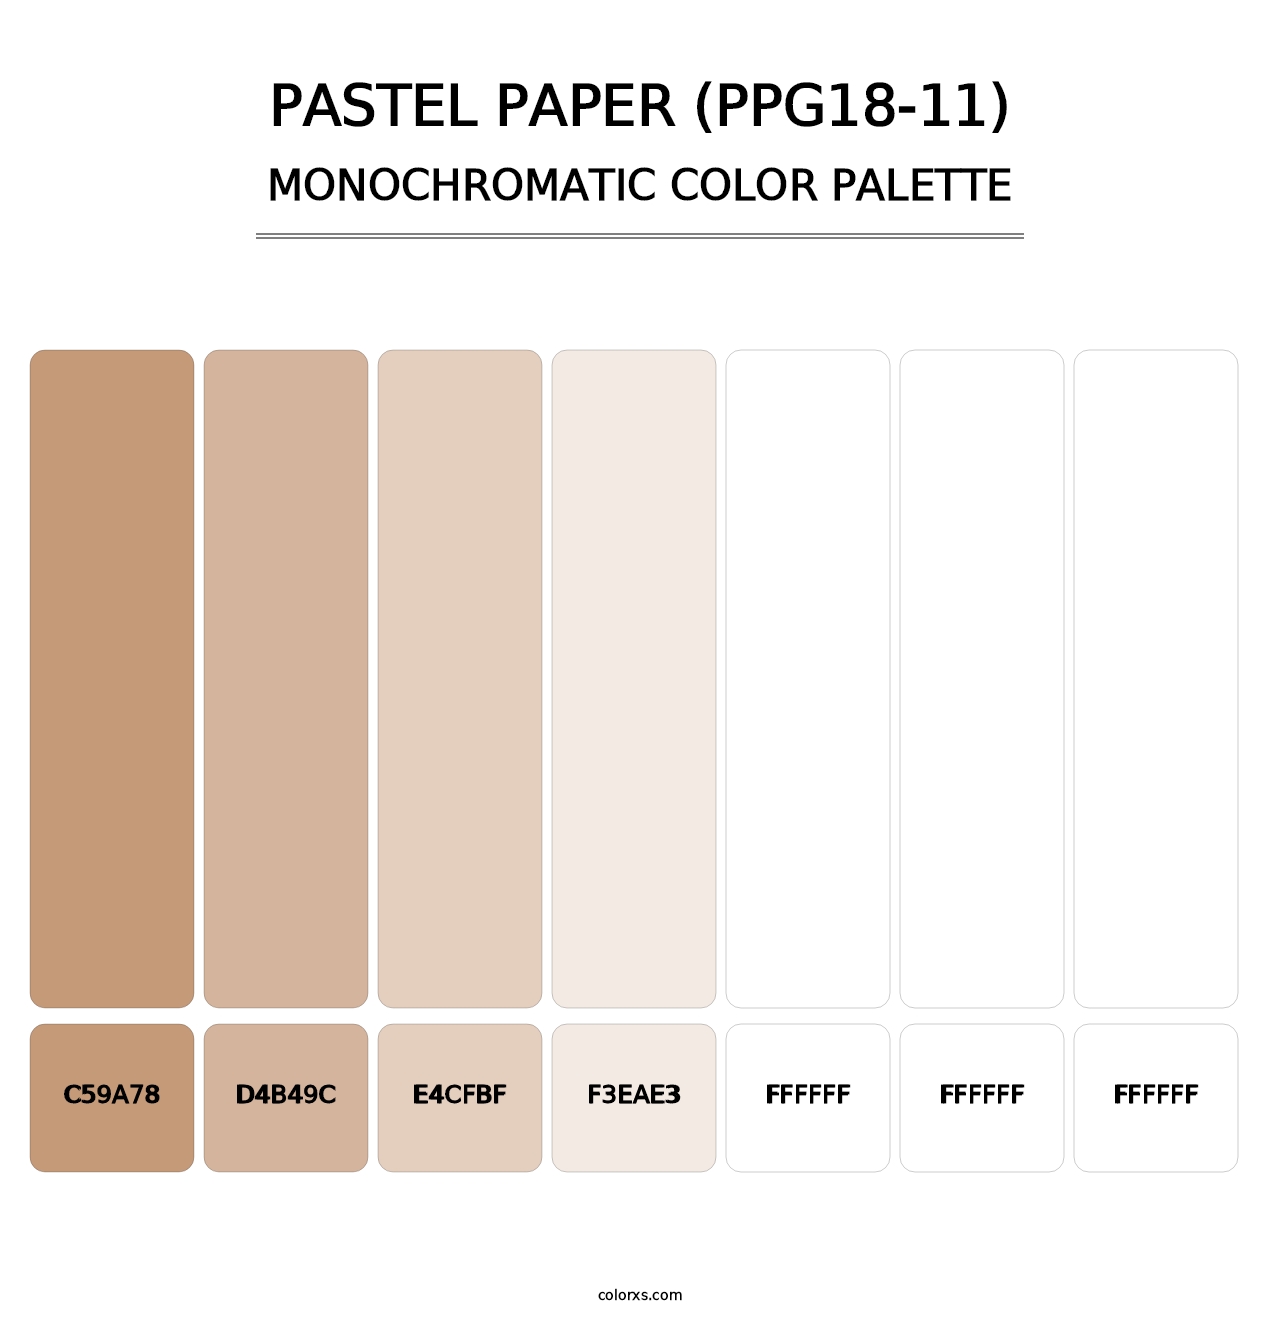 Pastel Paper (PPG18-11) - Monochromatic Color Palette